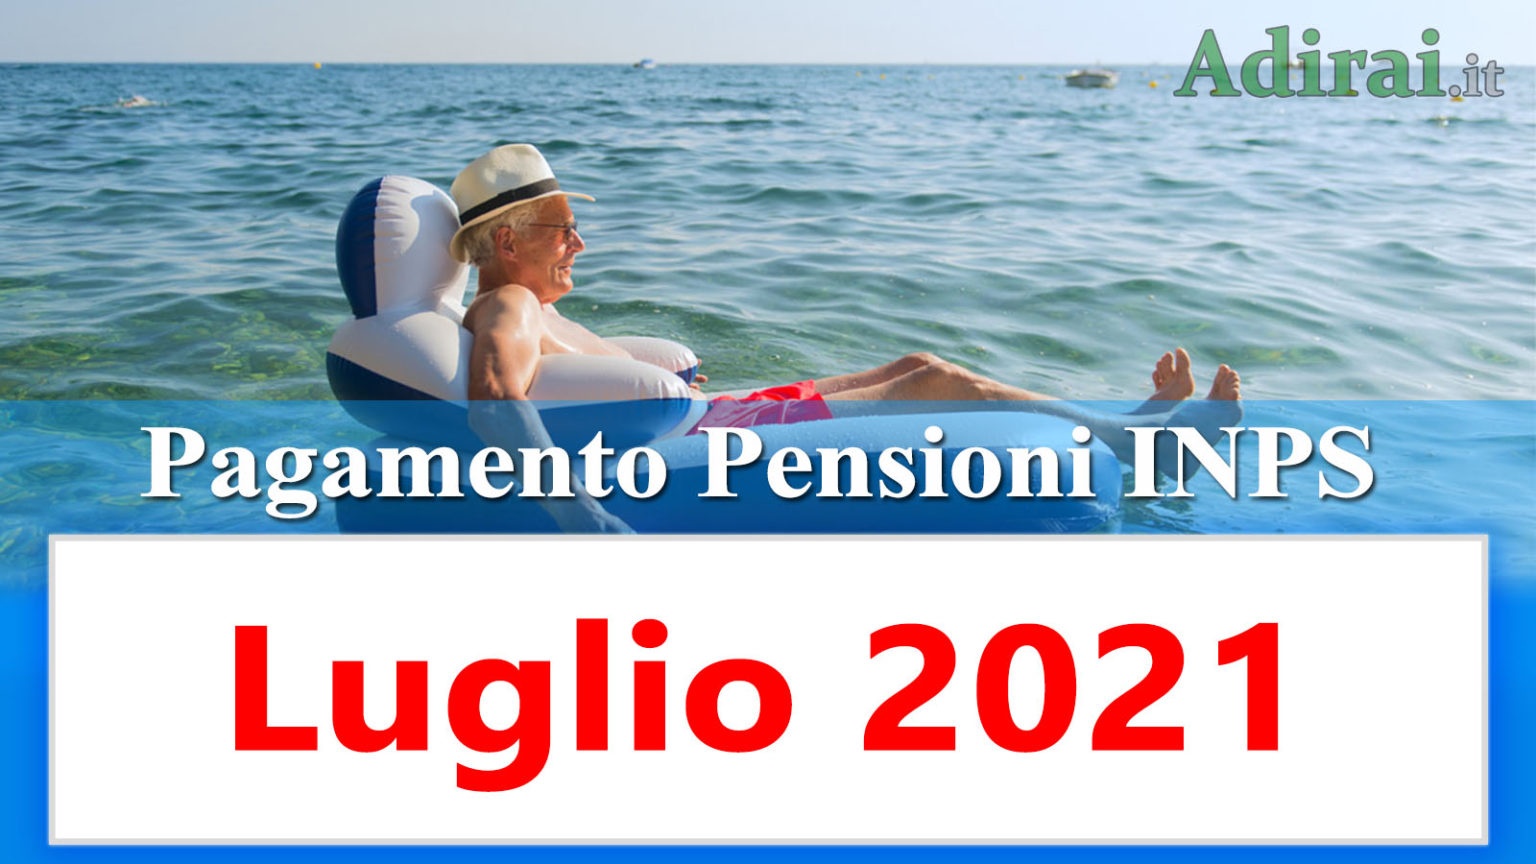 Pagamento pensioni luglio 2021 in anticipo Calendario Inps